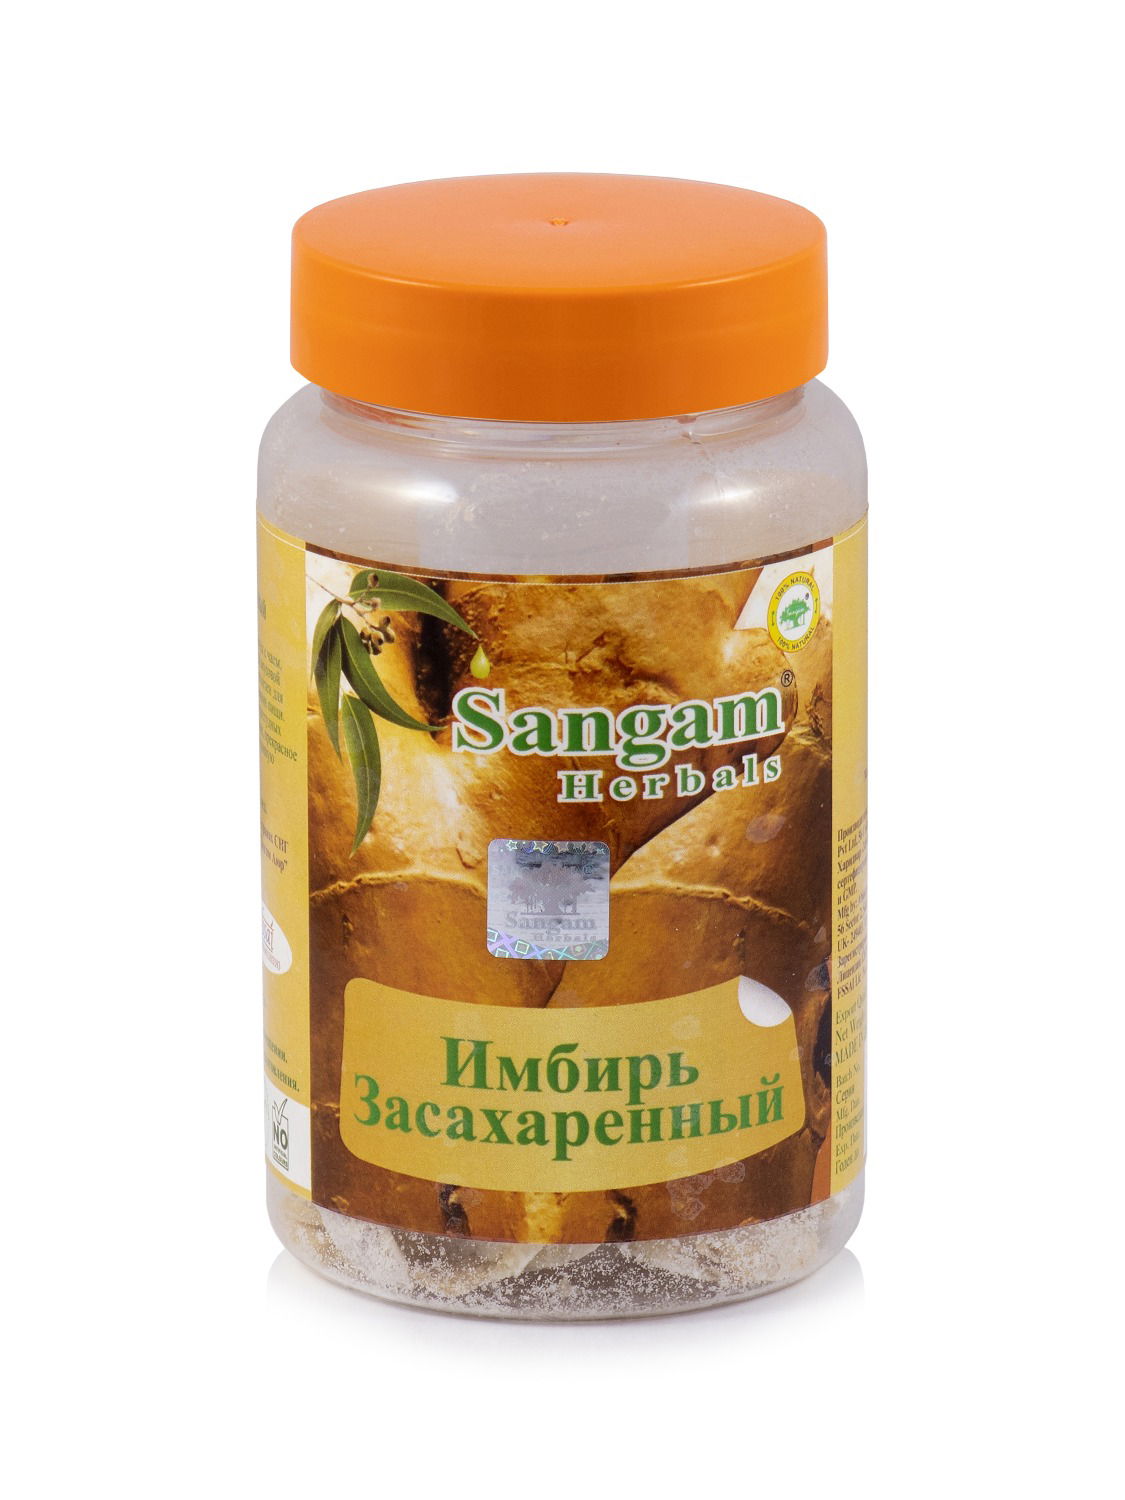 Купить Имбирь засахаренный Sangam Herbals, 50 г в интернет-магазине #store#